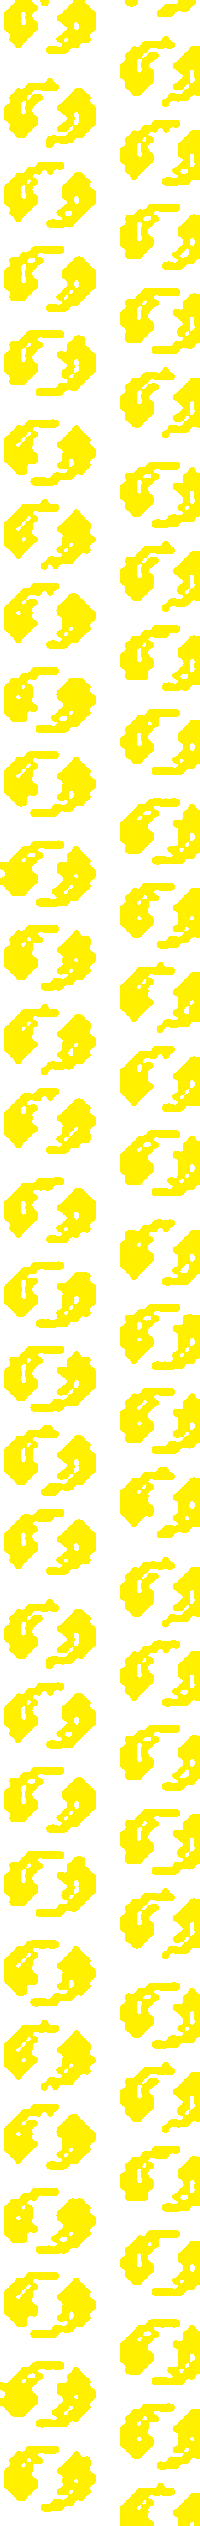 Loop Pattern Sticker by Giro Lar e Lazer